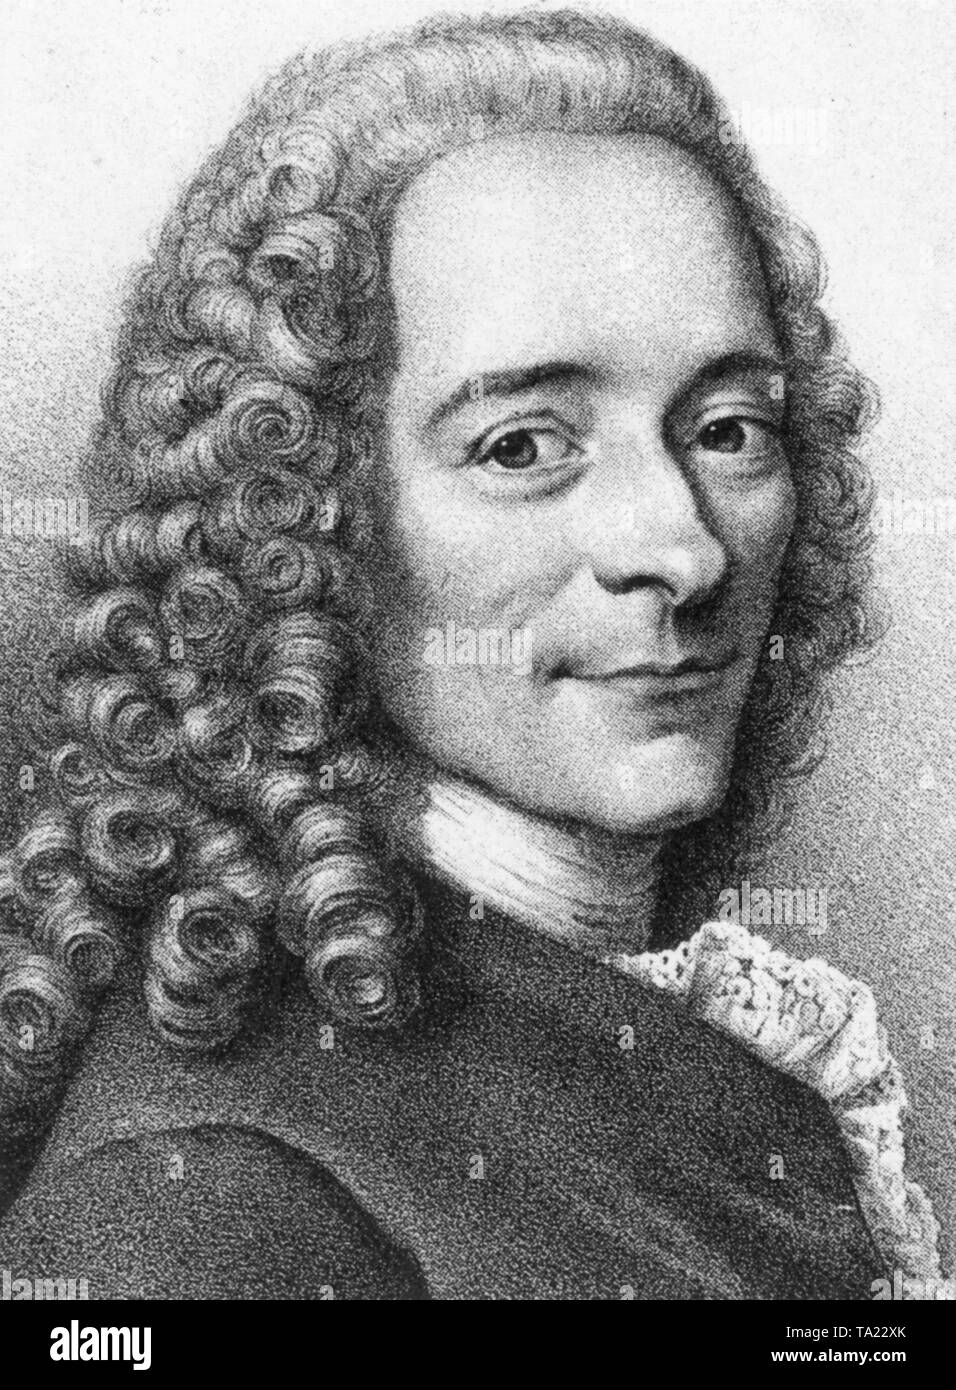 Voltaire Philosopher Enlightenment